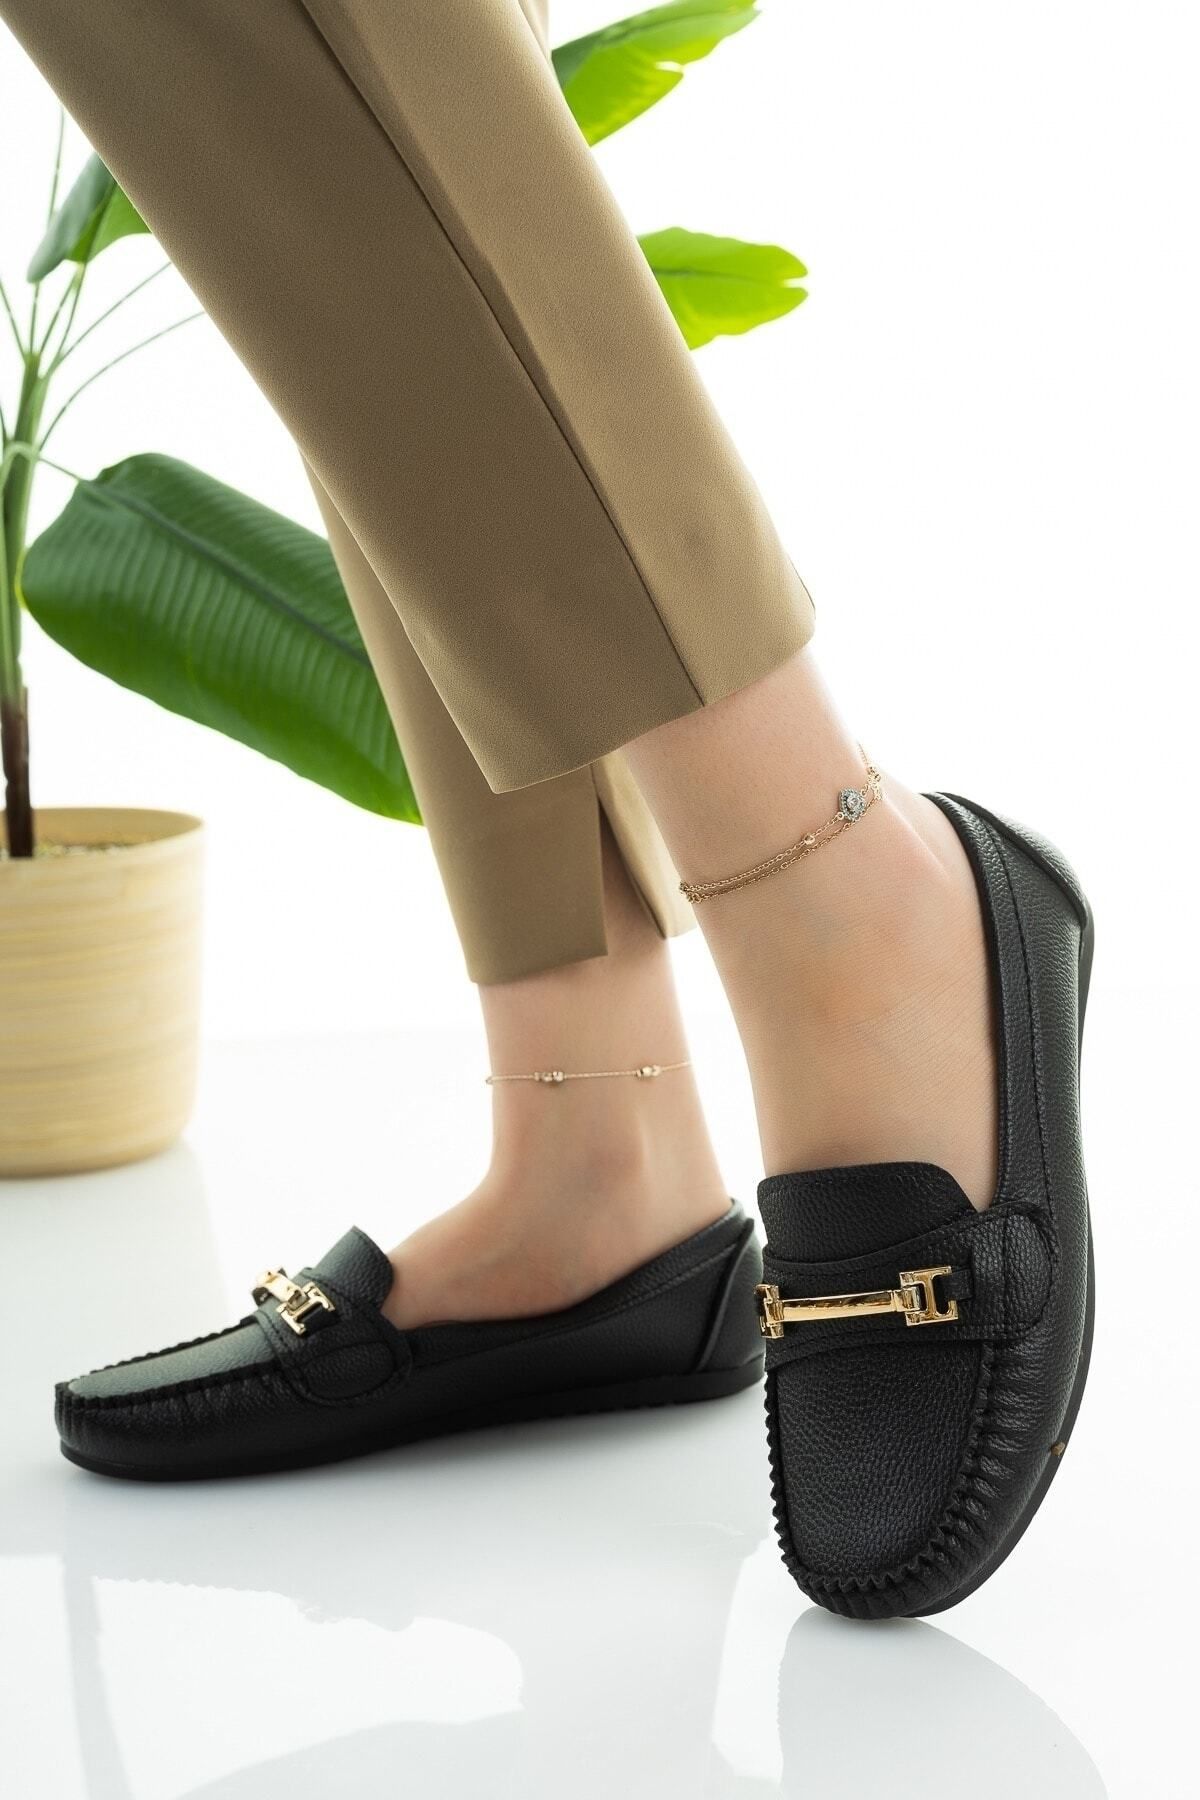 Modafırsat Kadın Babet Siyah Zincir Tokalı Hafif Rahat Taban Şık Günlük Ayakkabı